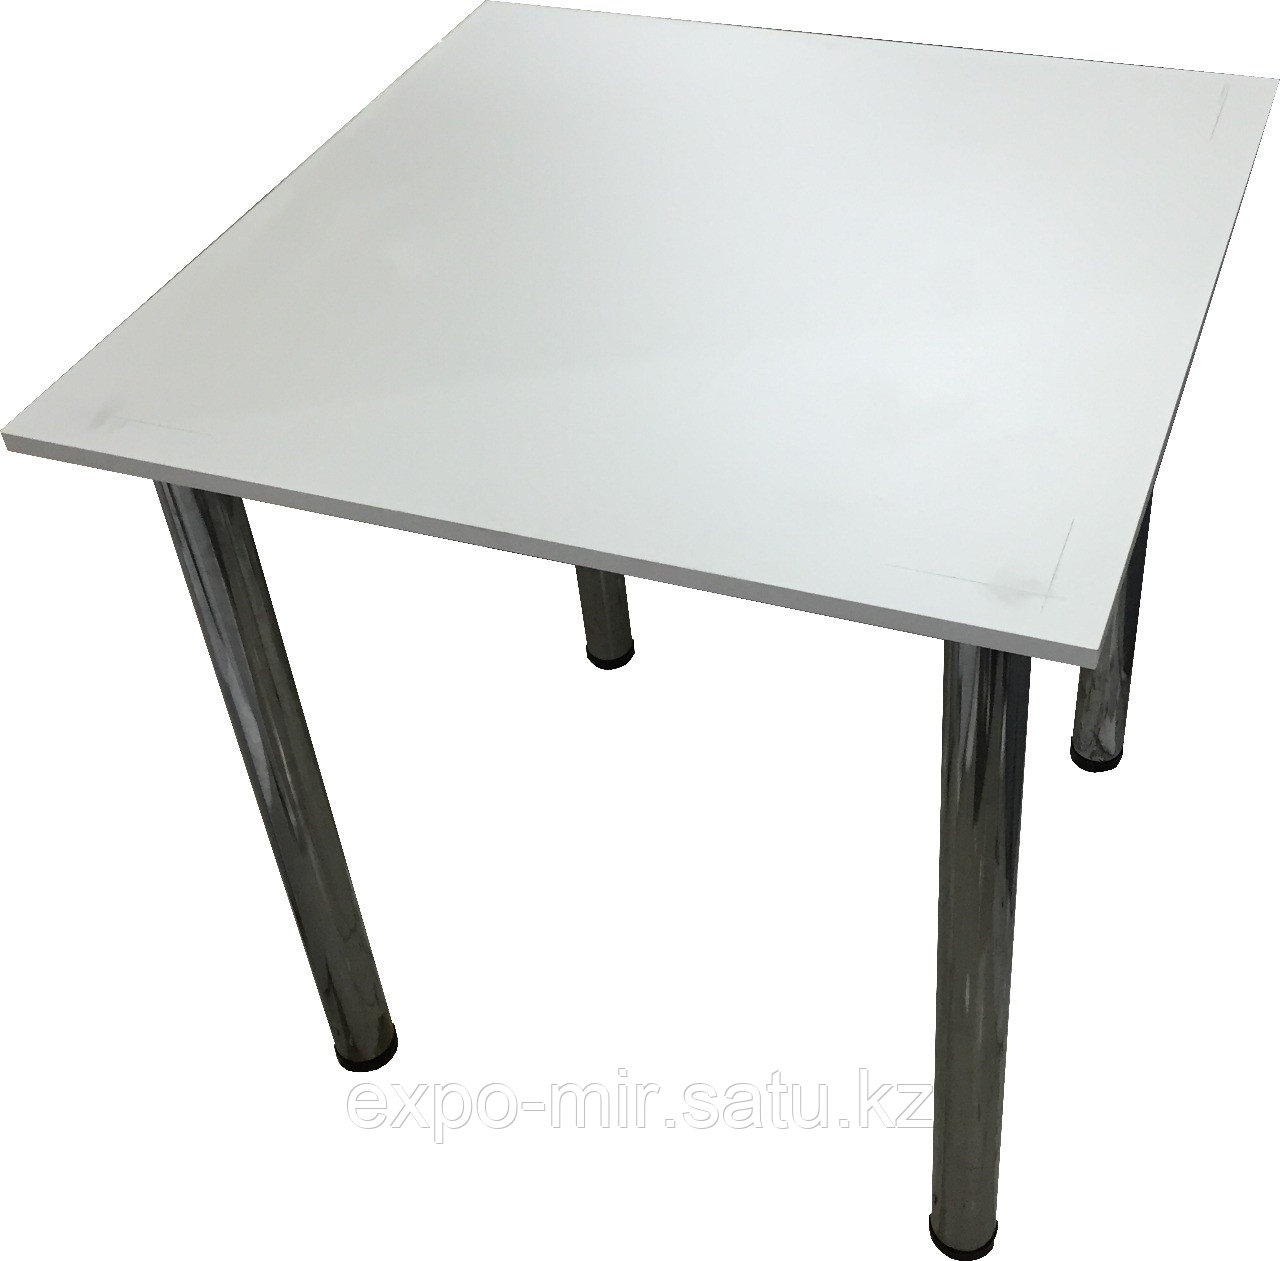 Аренда (прокат) столов, стол регистрации, фуршетный стол 80х80 см